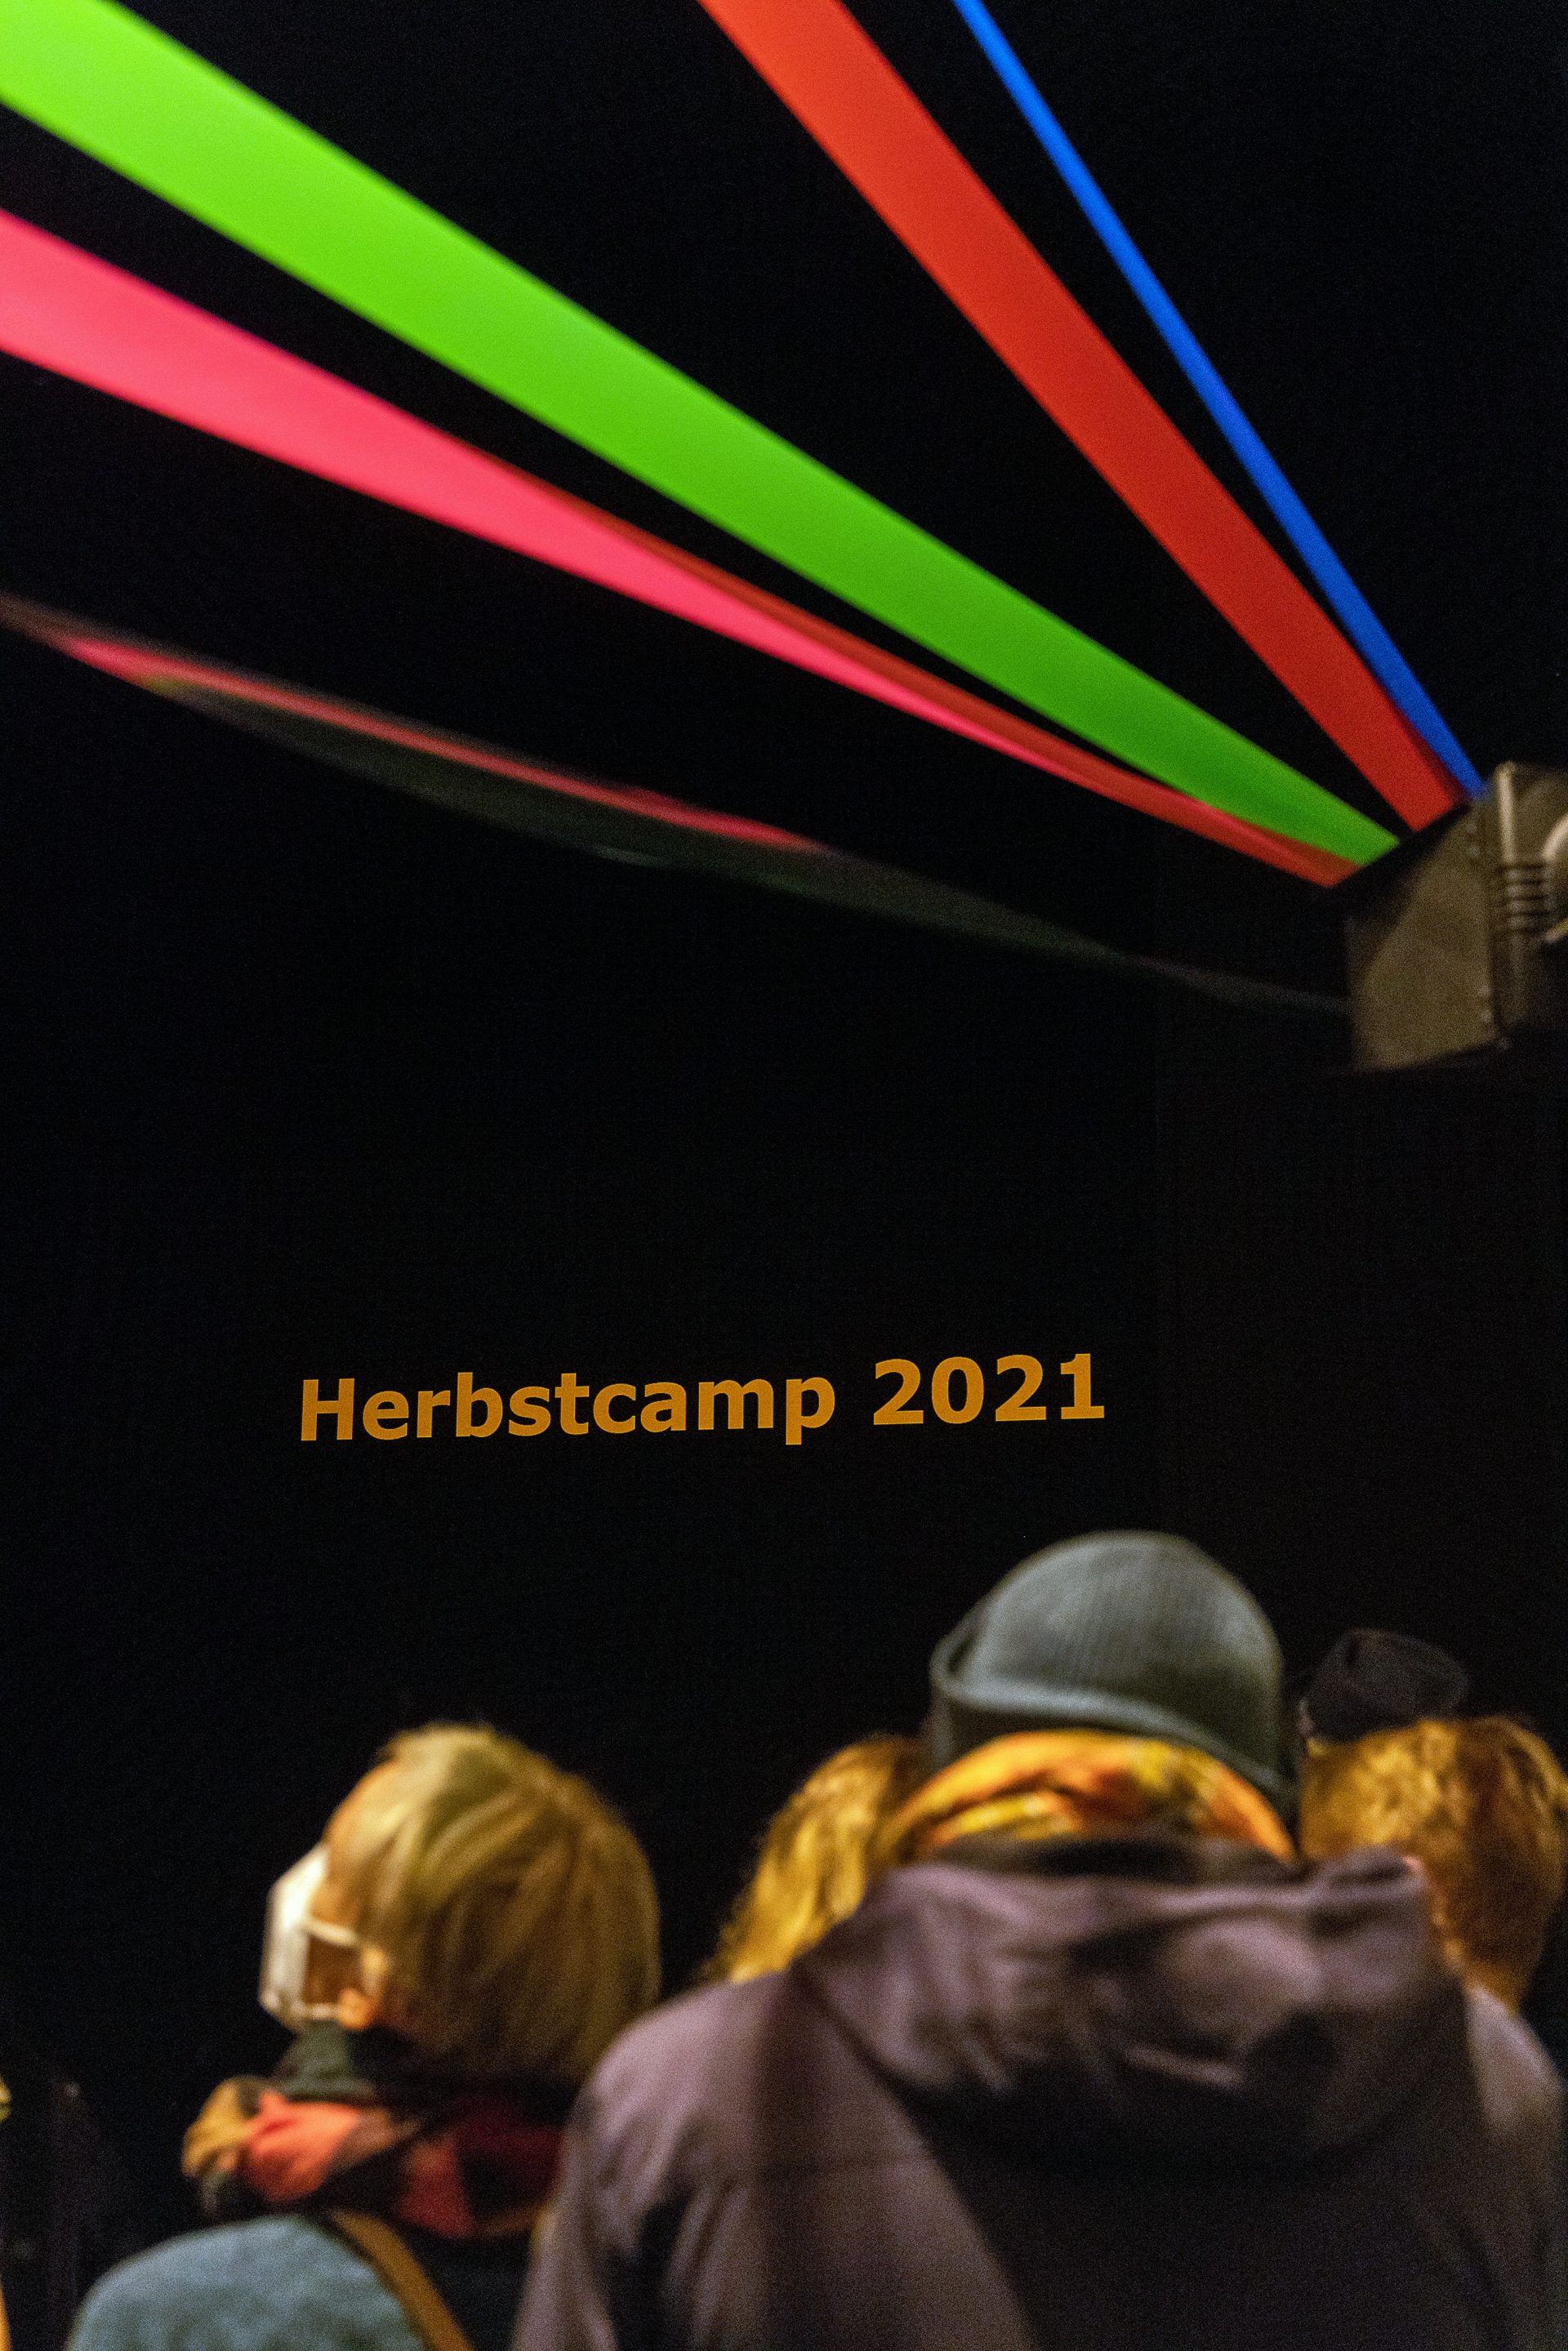  Herbstcamp 2021 - Deutsches Theater (Deutsches Theater Berlin)